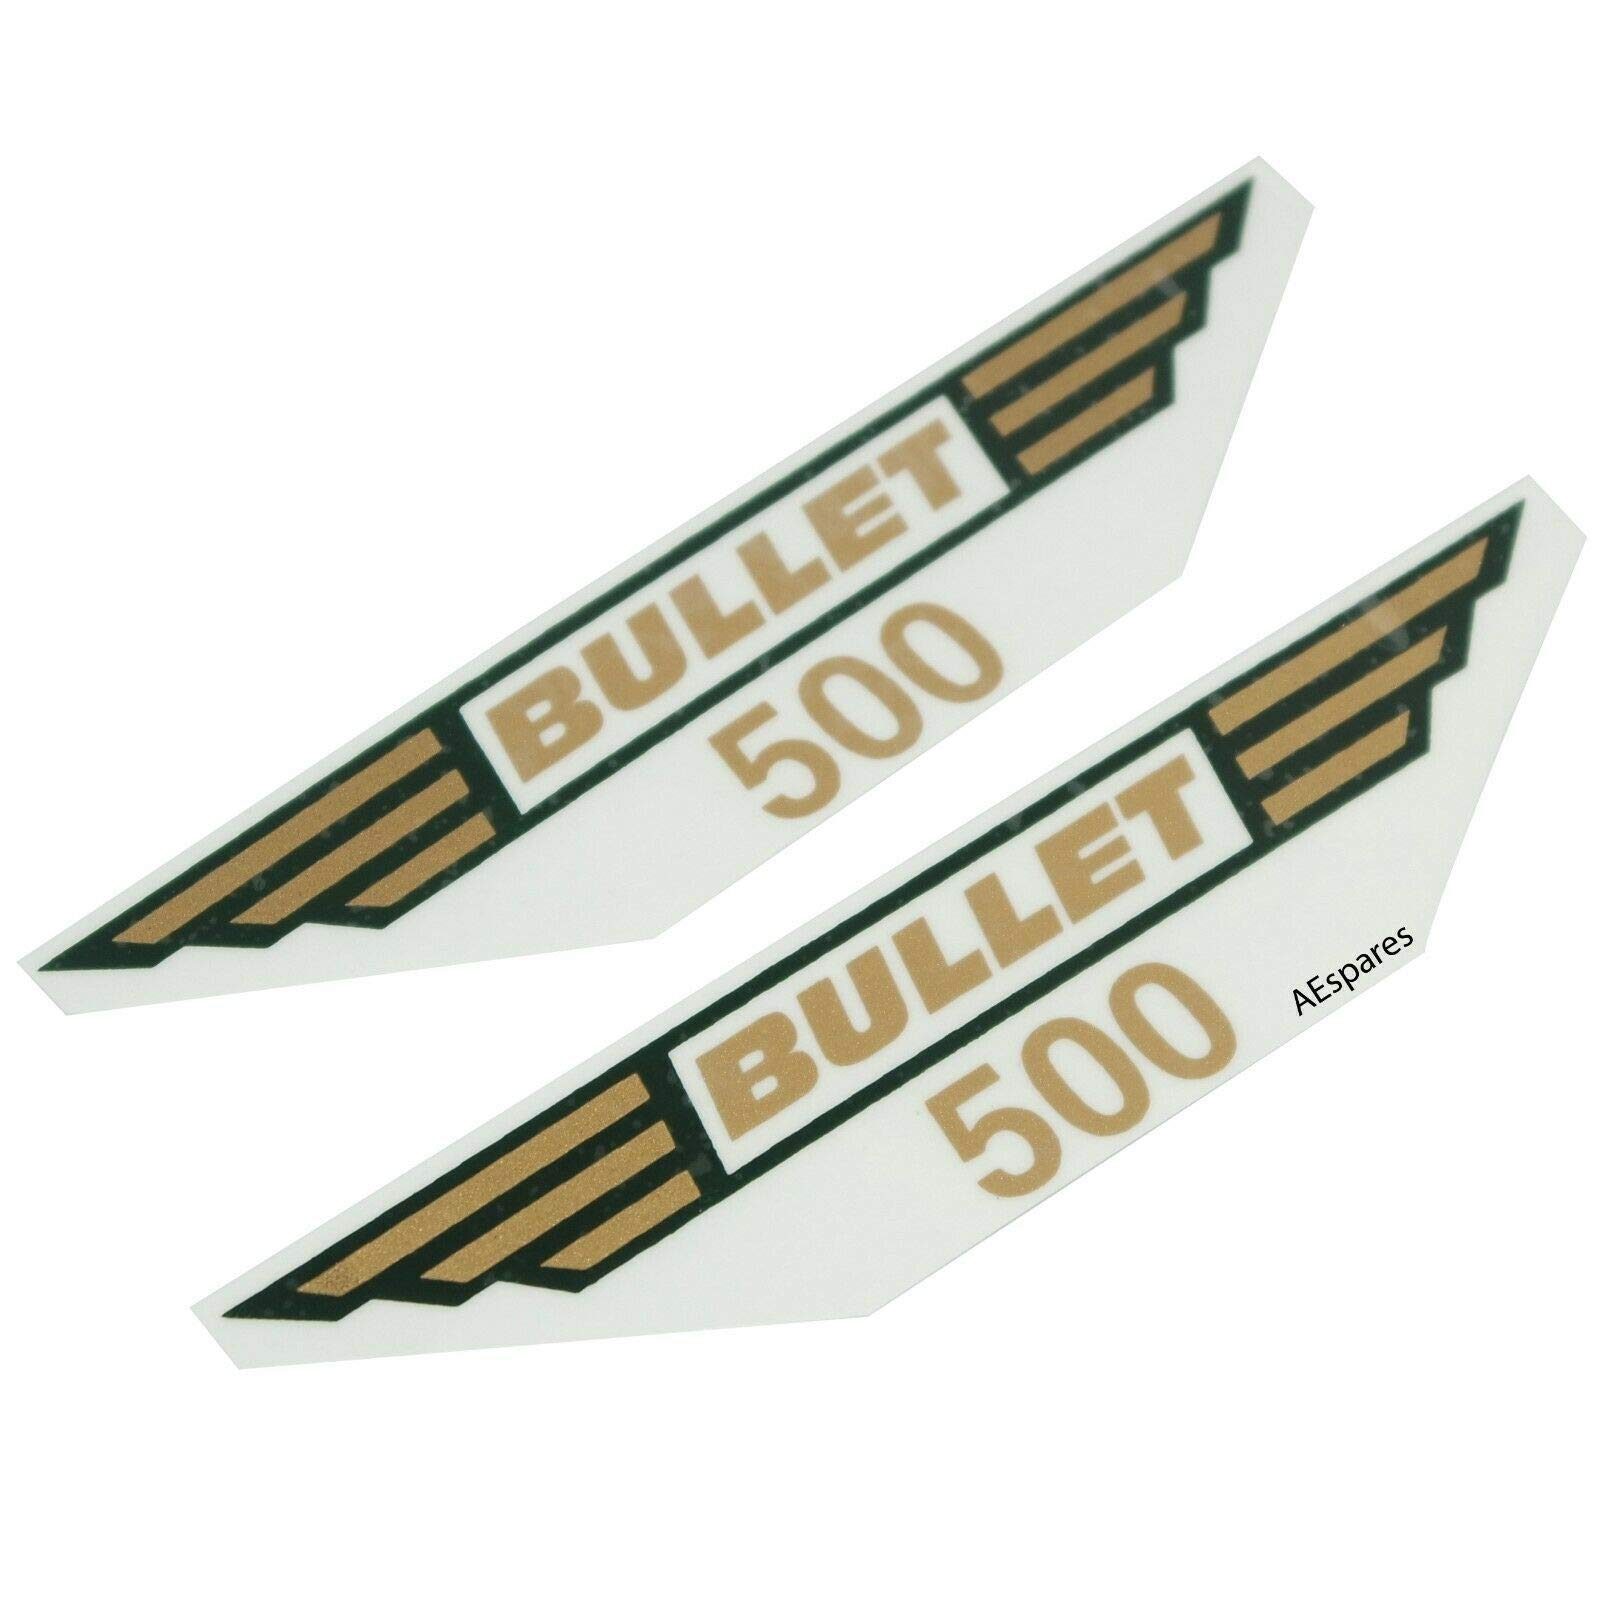 AEspares Werkzeugkasten Aufkleber Emblem Set Golden passend für Royal Enfield 500 Motorrad von AEspares